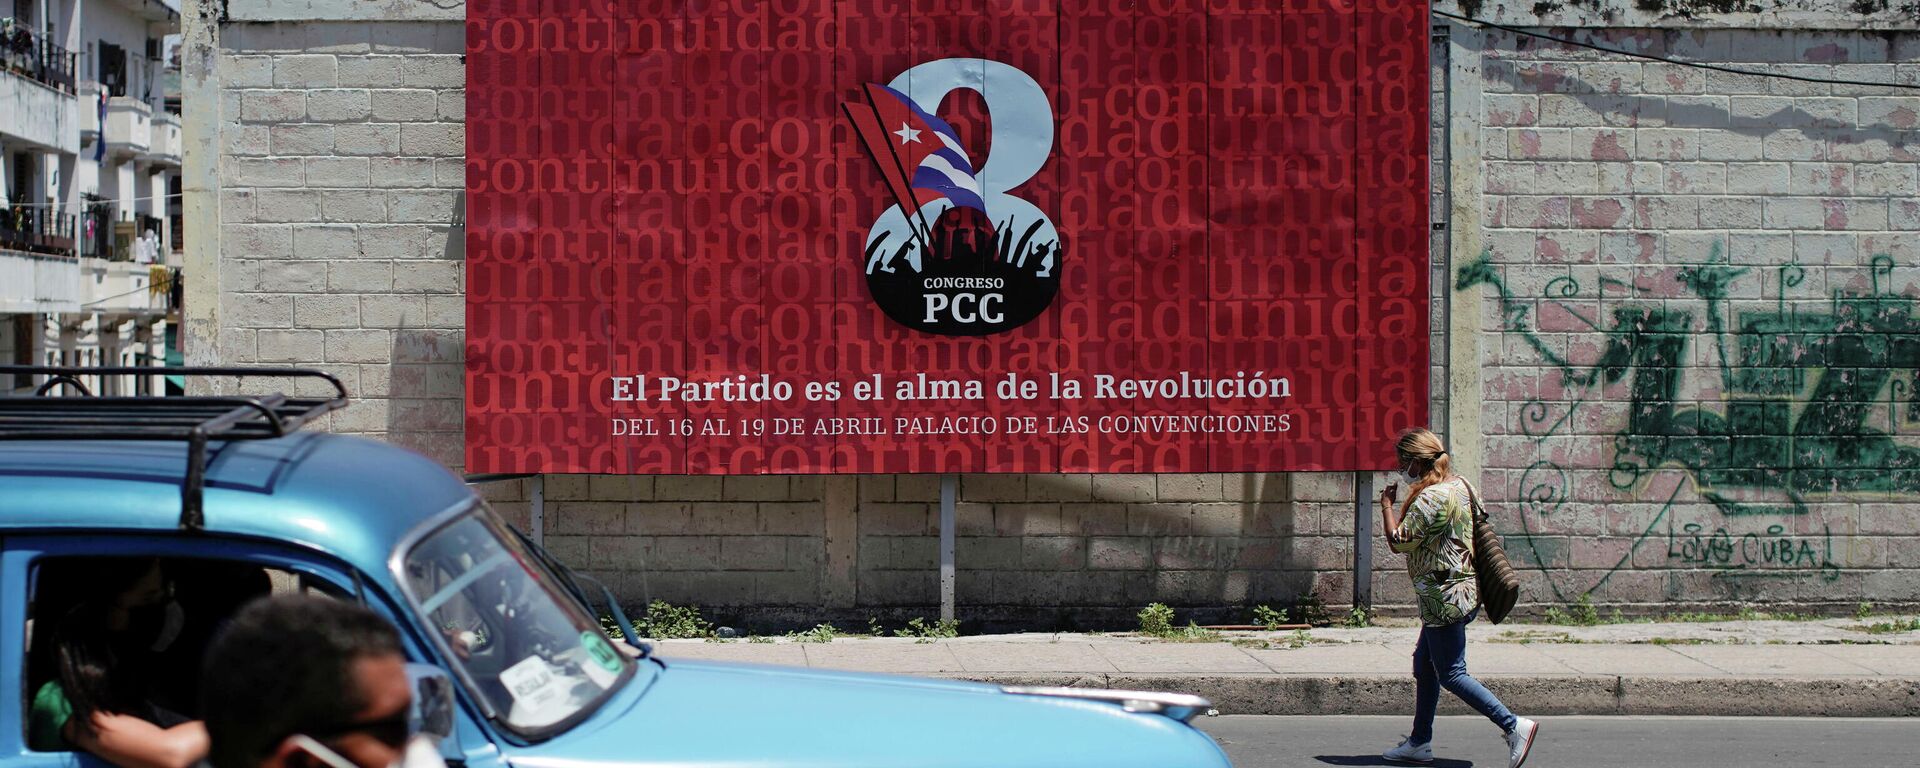 El VIII Congreso del Partido Comunista de Cuba (PCC) - Sputnik Mundo, 1920, 19.04.2021